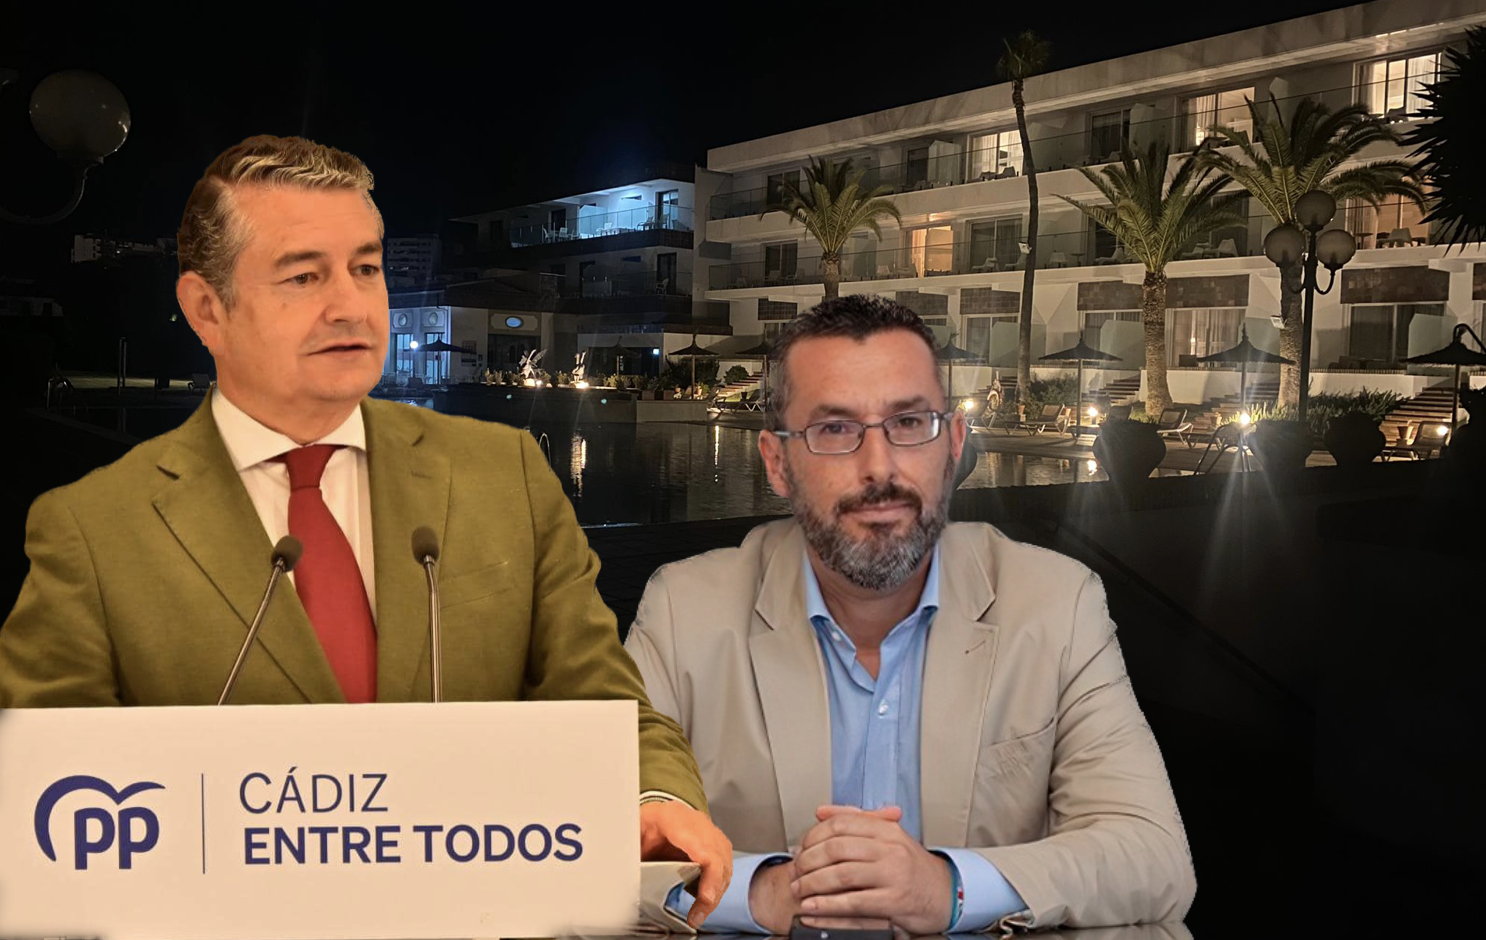 Antonio Sanz y Juan Franco, con el Hotel Jerez como telón de fondo, en la negociación de PP y La Línea 100% por la Diputación de Cádiz.